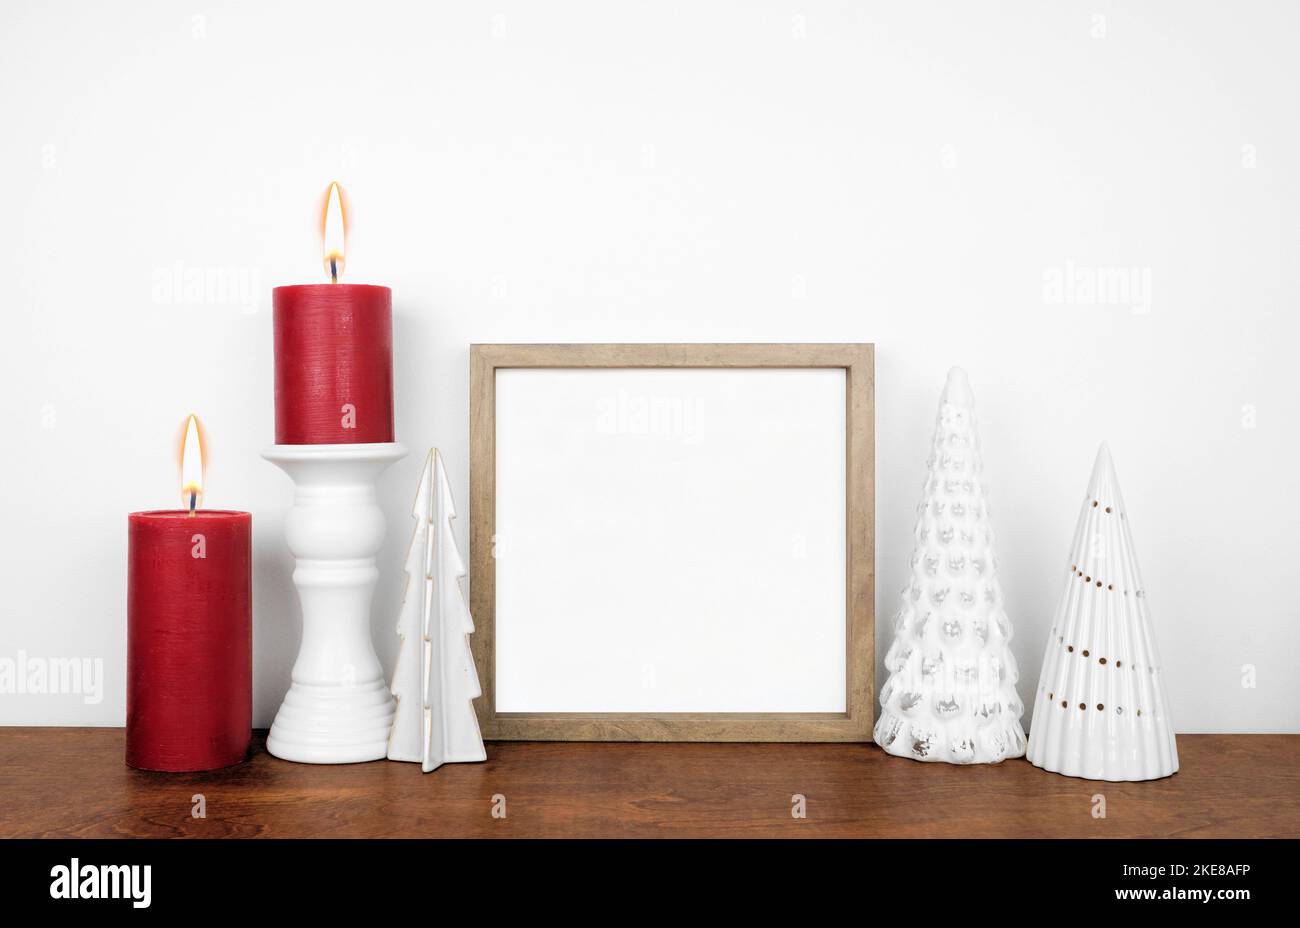 Natale mock up con cornice in legno, albero bianco decorazione e candele rosse. Cornice quadrata su una mensola di legno contro una parete bianca. Spazio di copia. Foto Stock